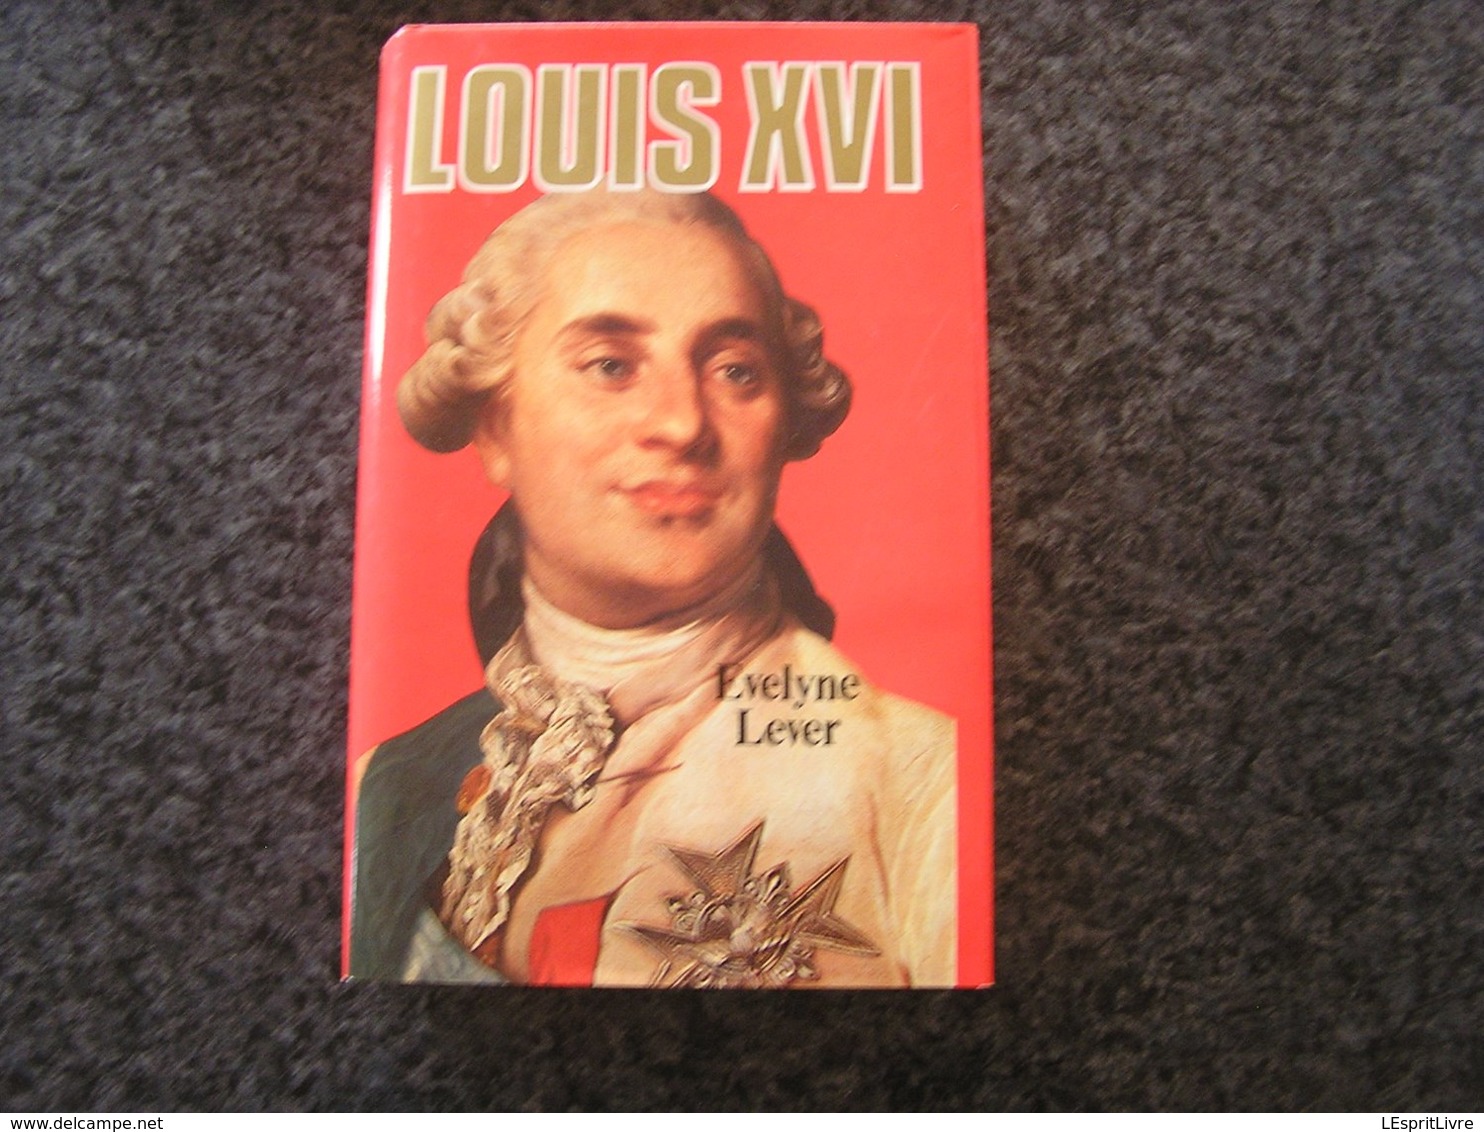 LOUIS XVI Evelyne Lever Histoire Roi Royaume De France Guerre Révolution Monarchie - Historia